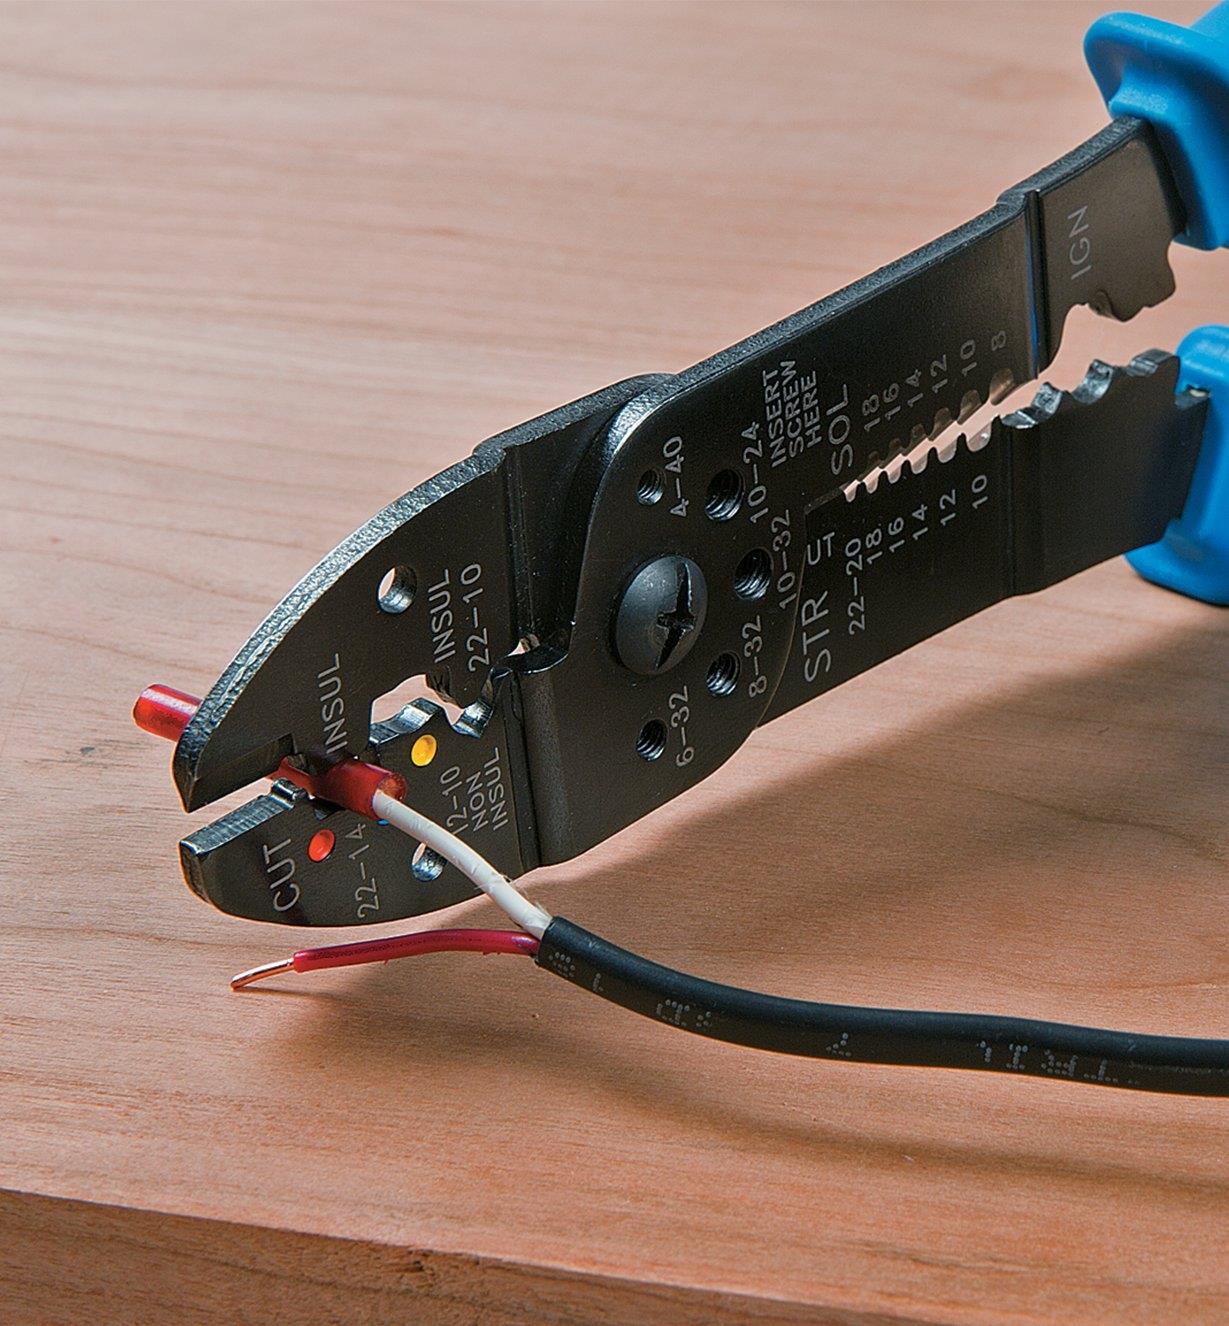 Cutting wire with a Crimper/Wire Stripper